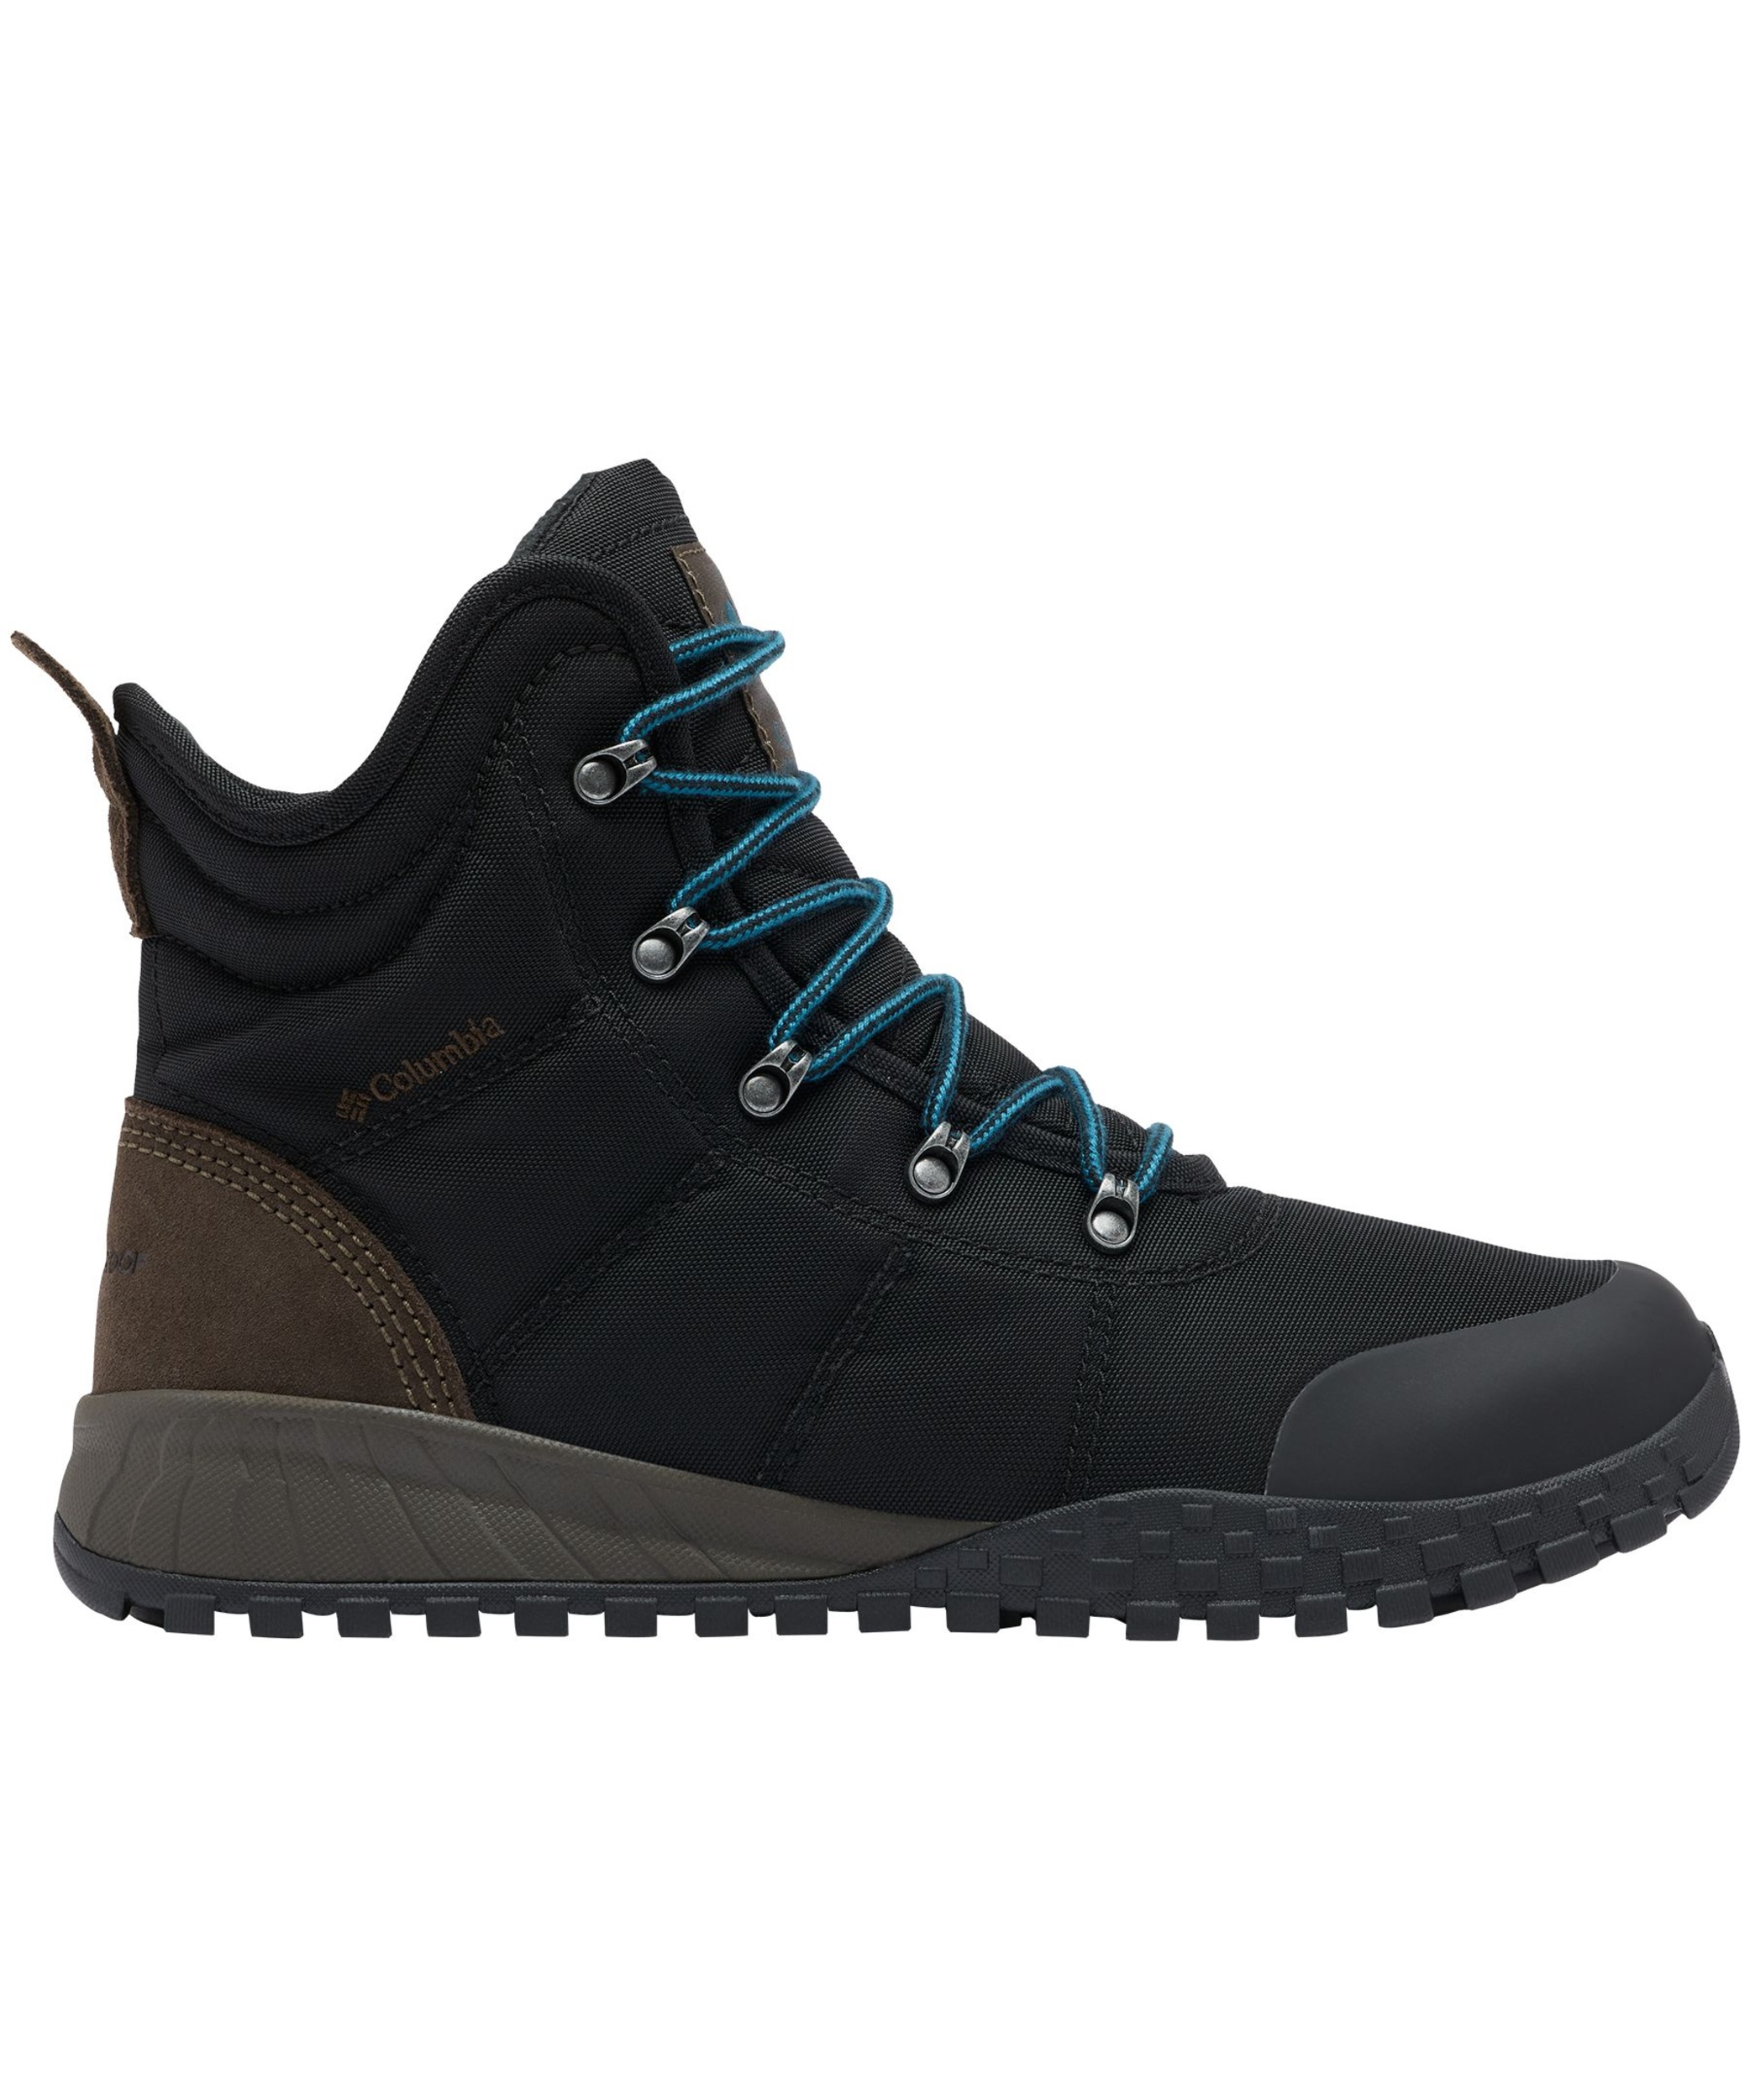 Columbia Men's Fairbanks Omni-Heat Waterproof Insulated Winter Boots ...